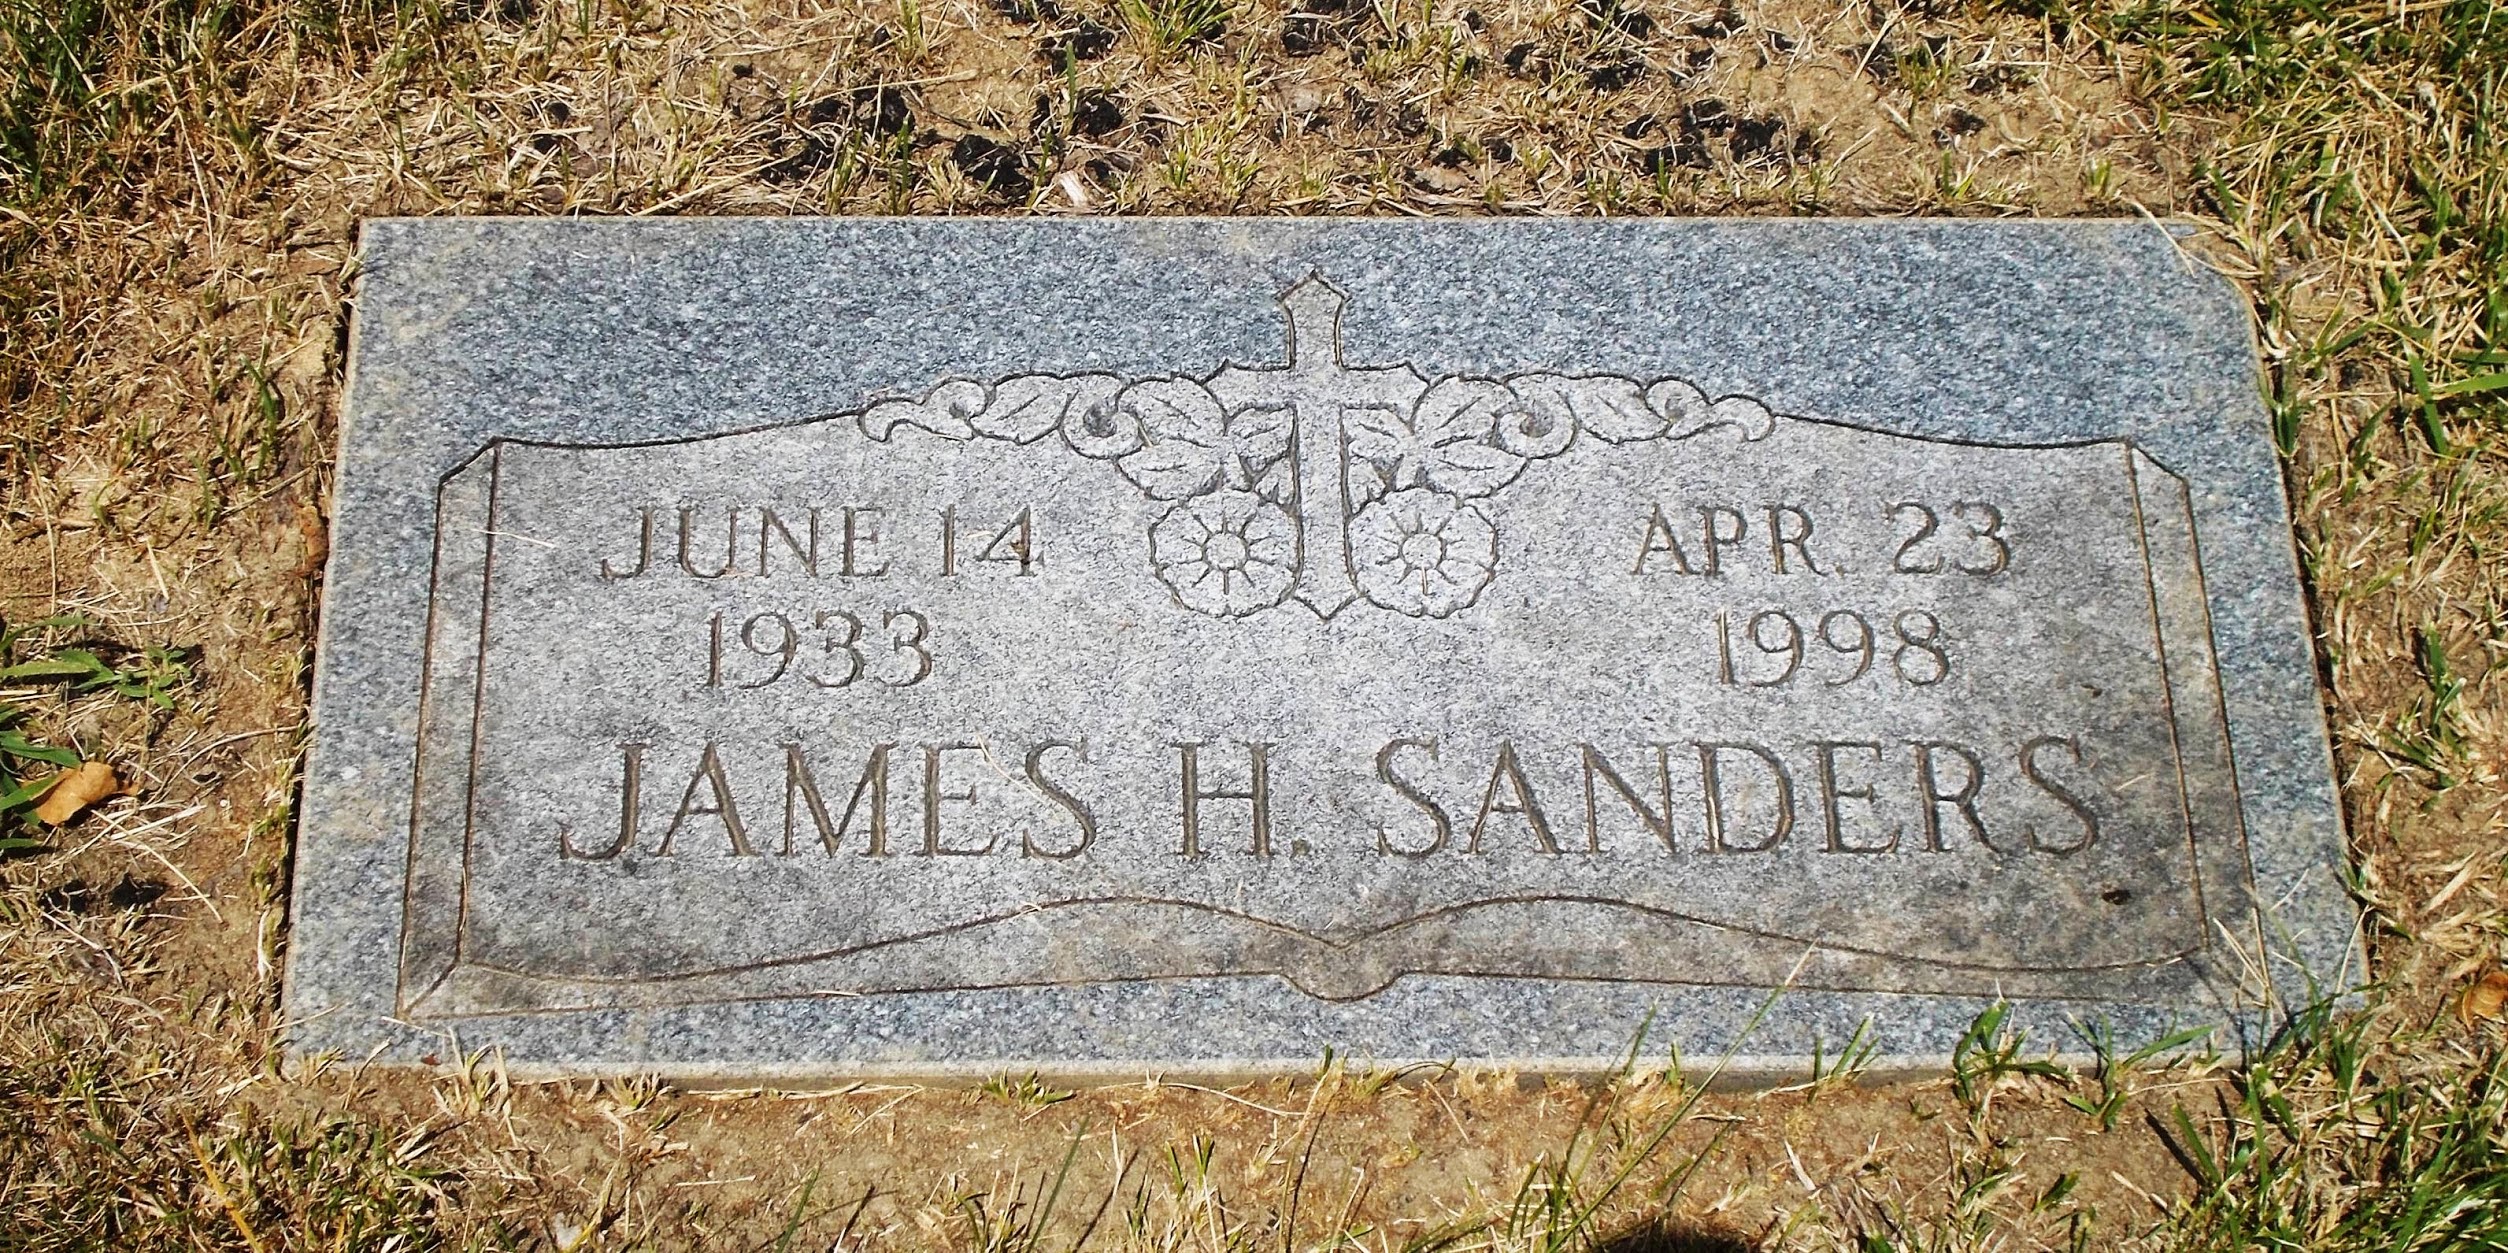 James H Sanders